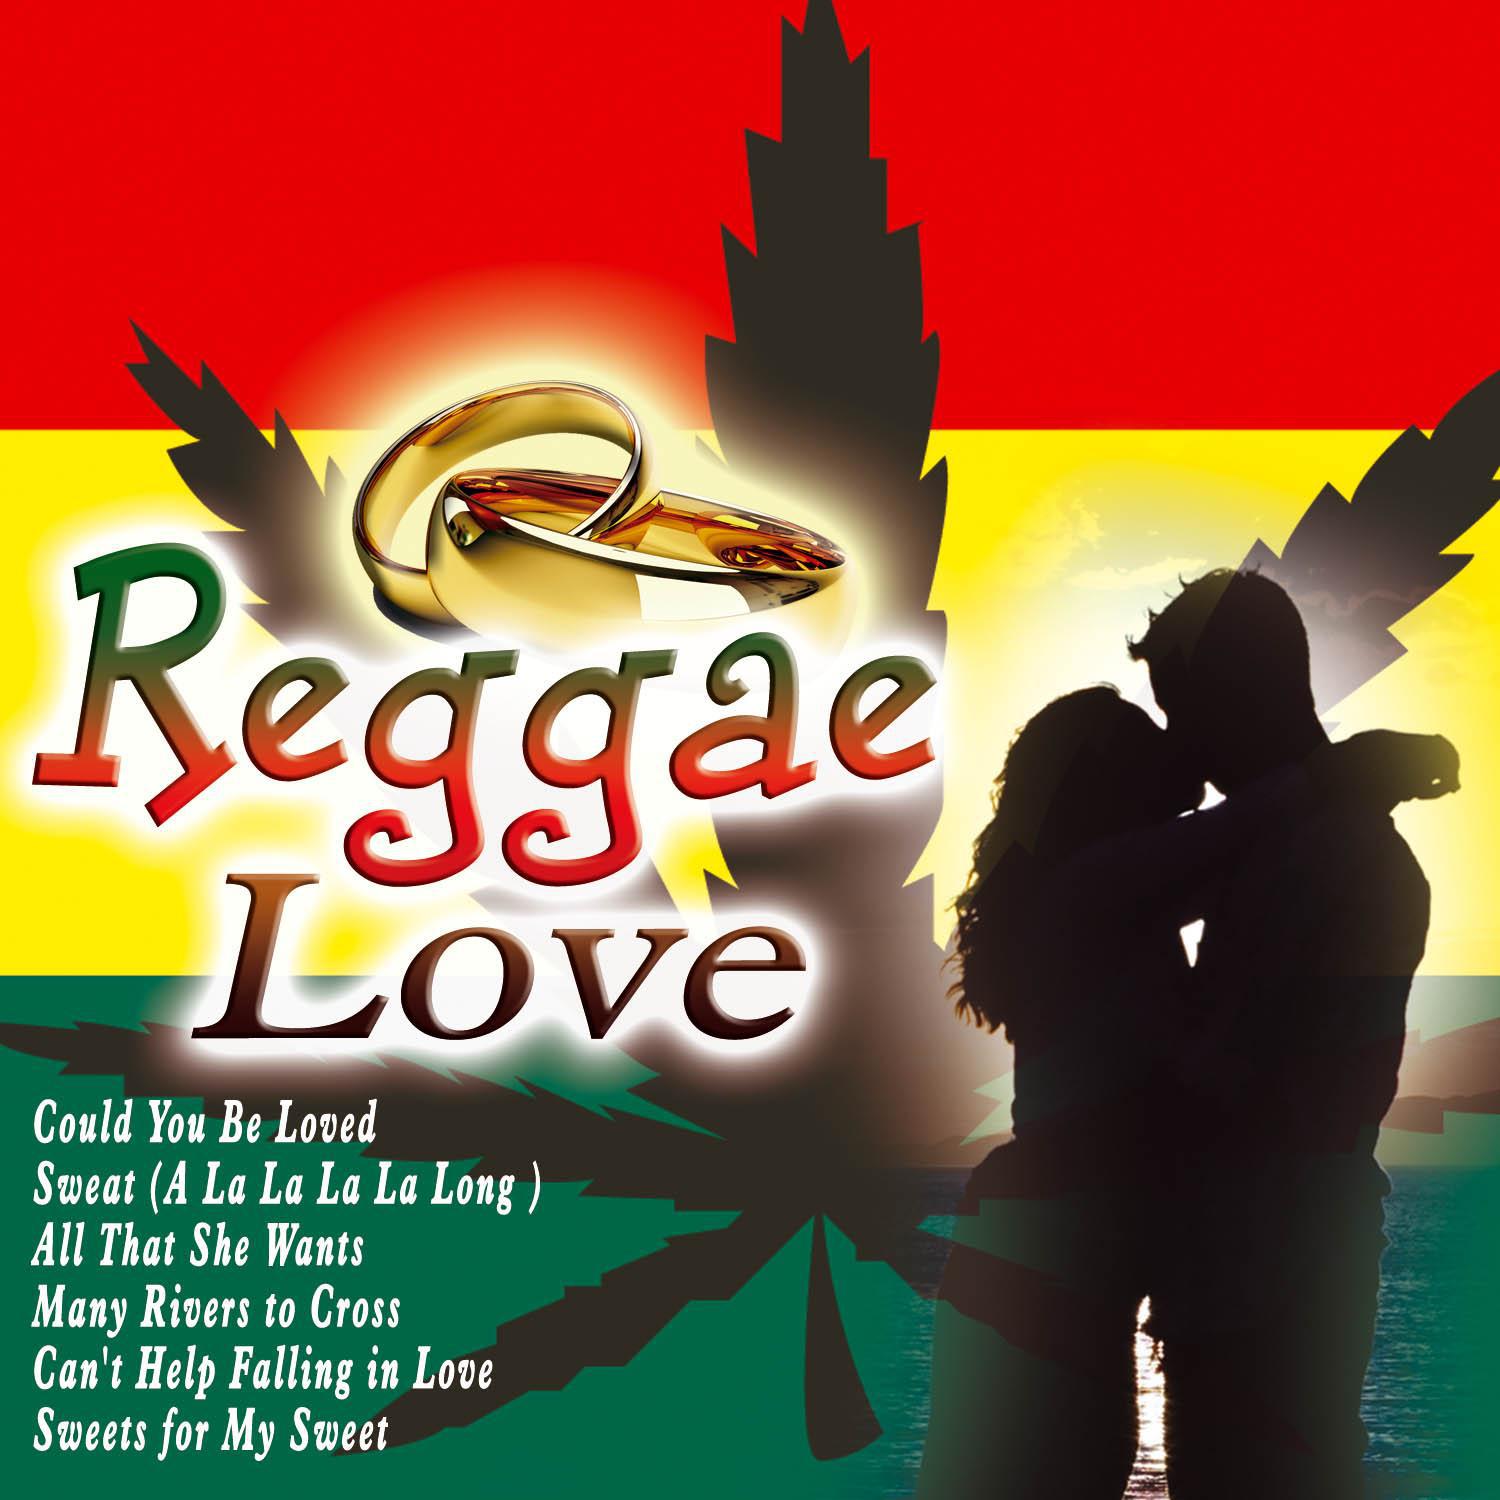 Jamaican Blue Star - Sunshine Reggae